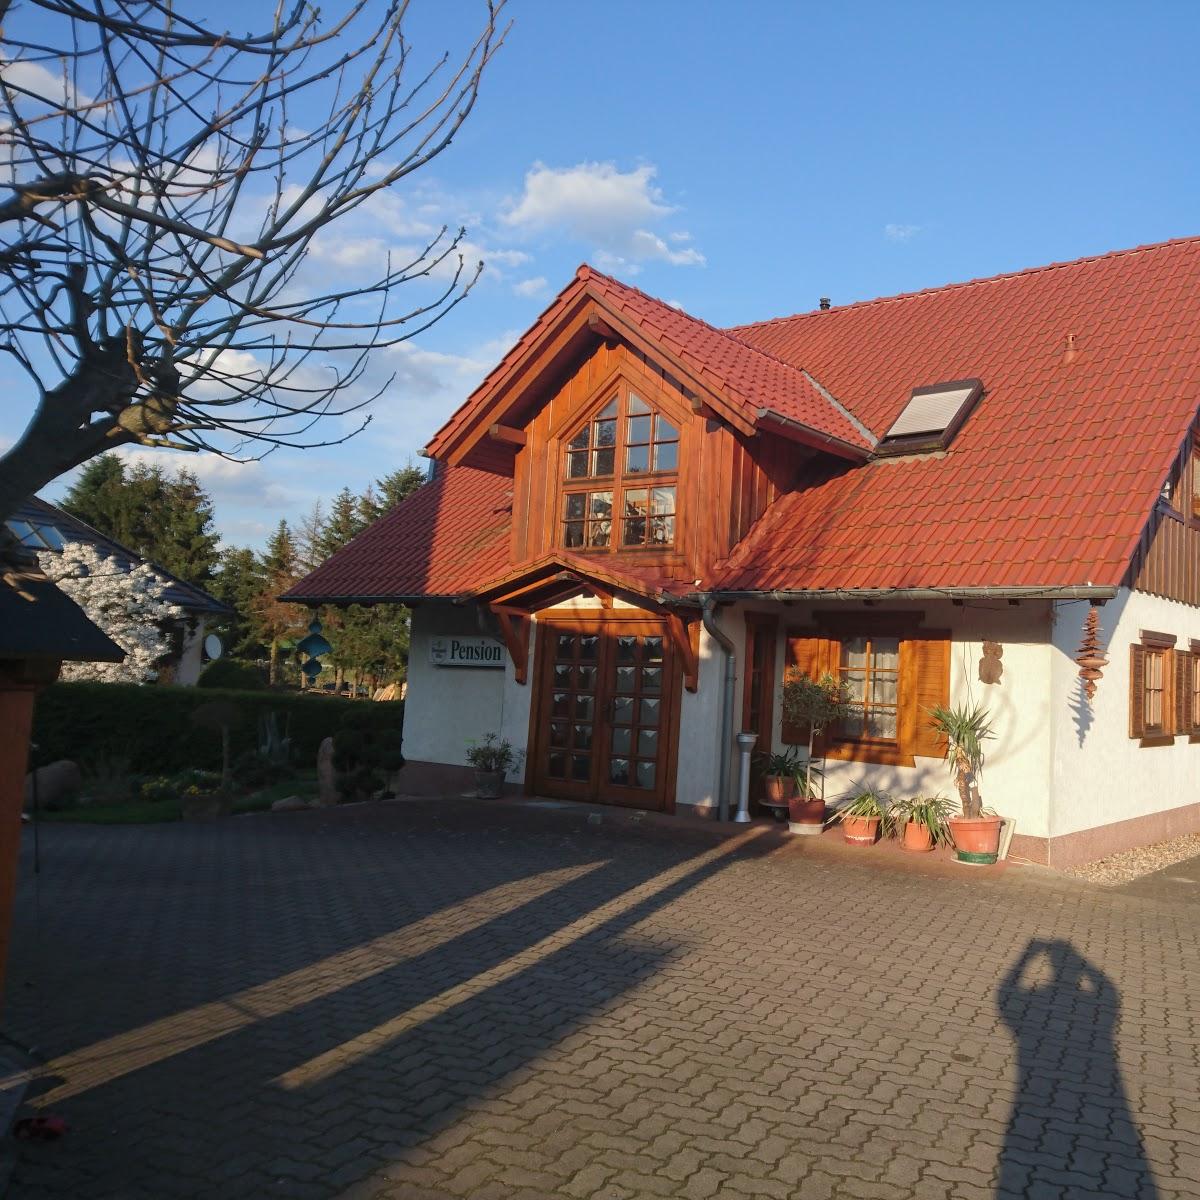 Restaurant "Gasthof & Pension Steinsdorf" in Neuzelle